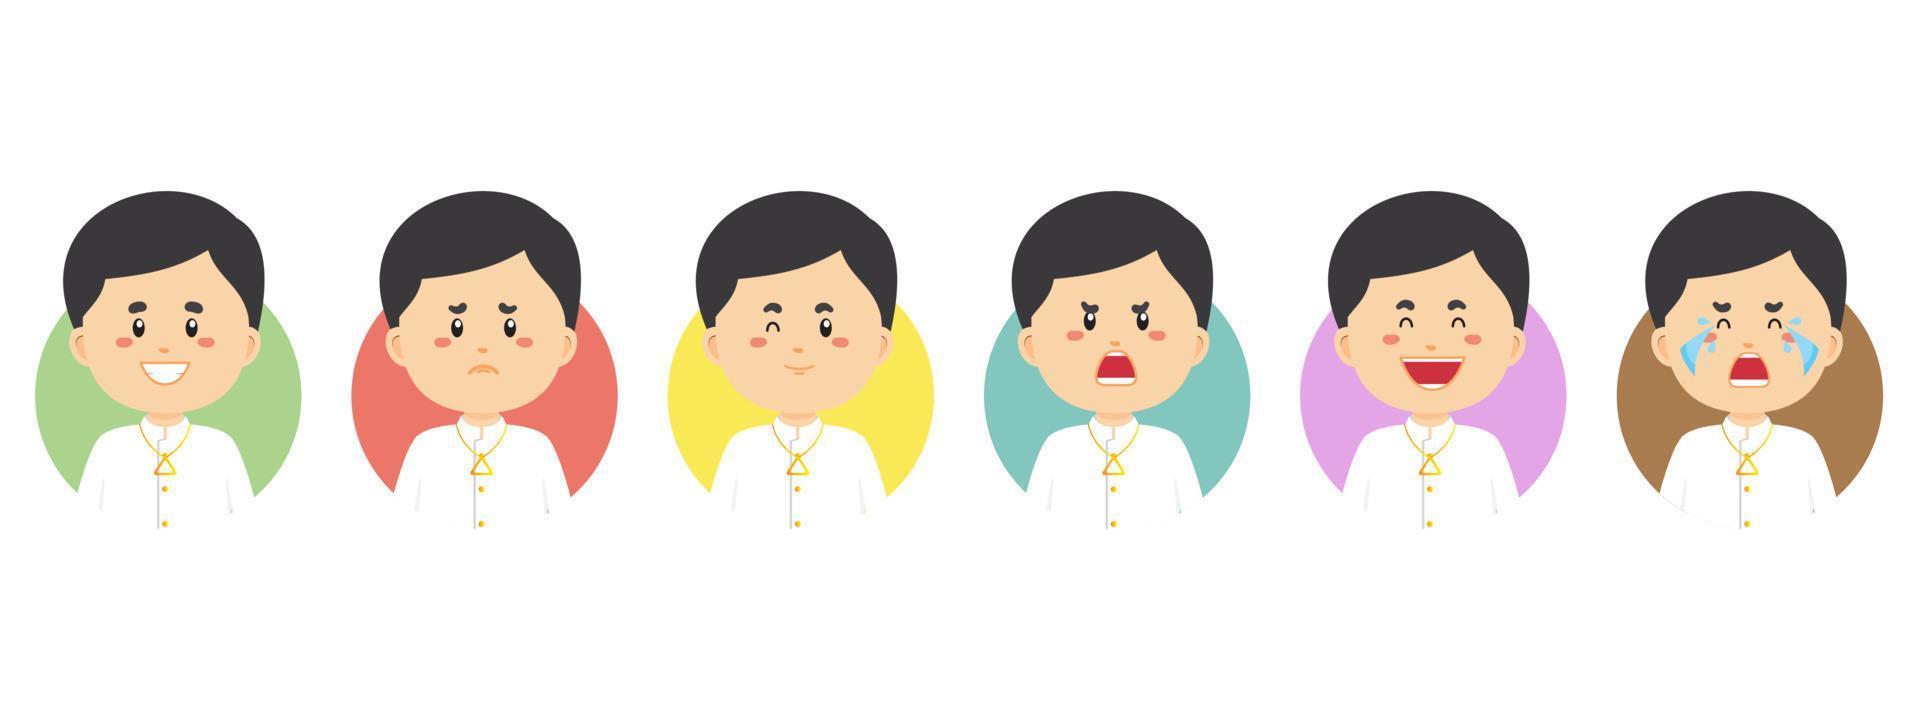 laos avatar met verschillende uitdrukkingen vector